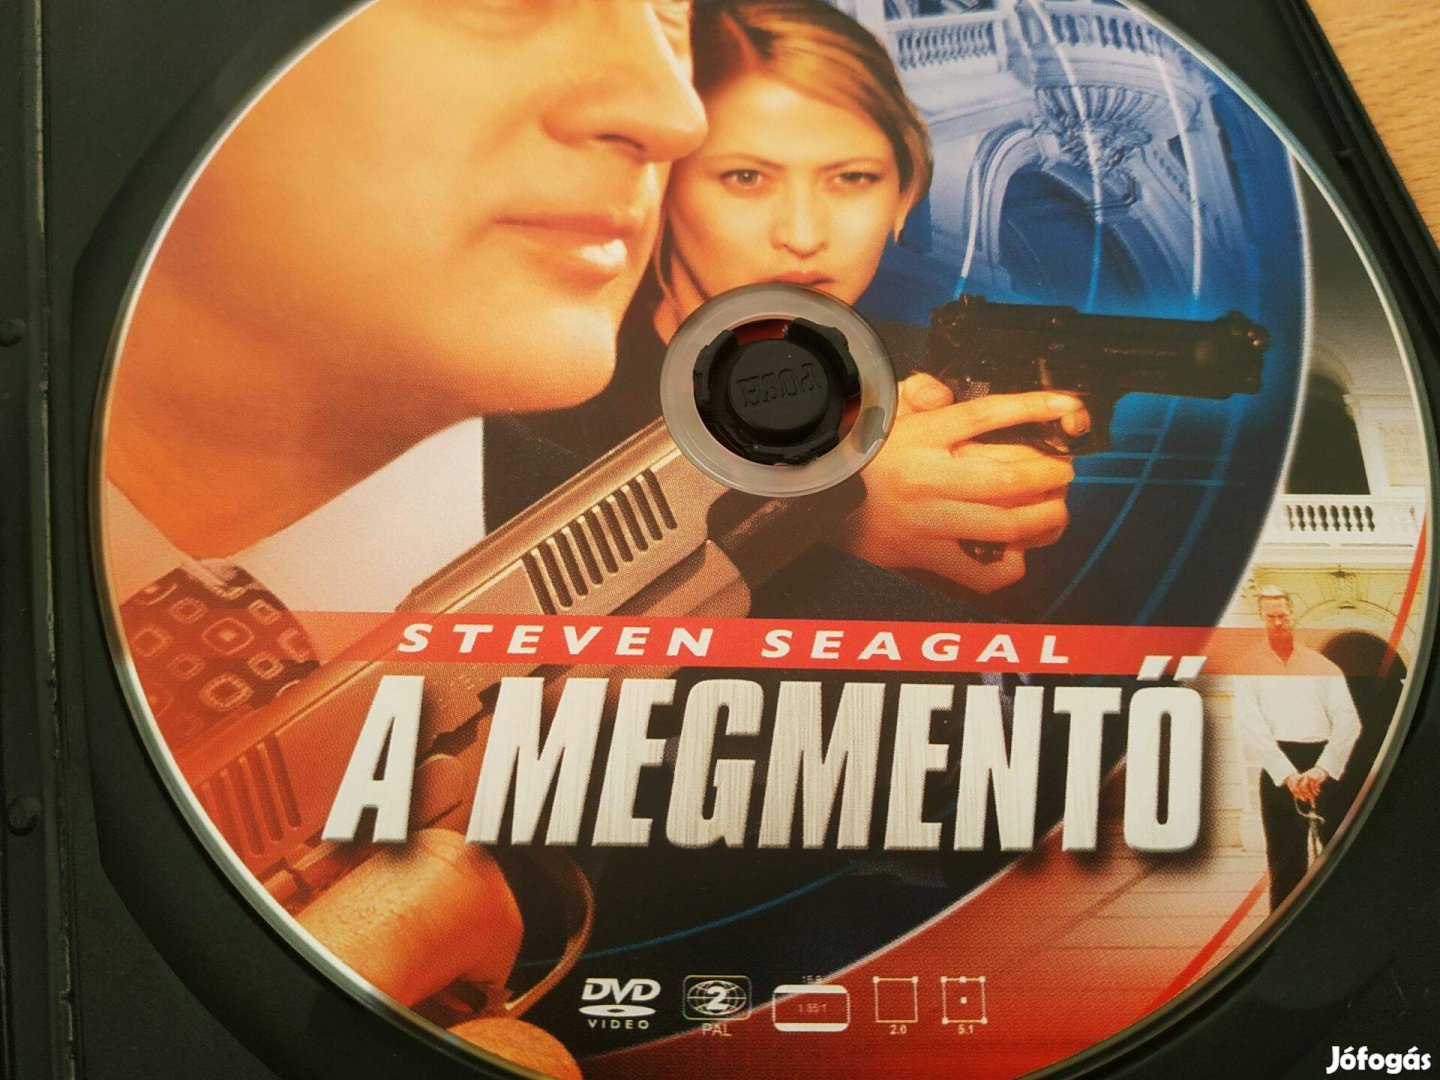 Steven Seagal - A megmentő (amerikai-lengyel akciófilm, 88 perc, 2004)